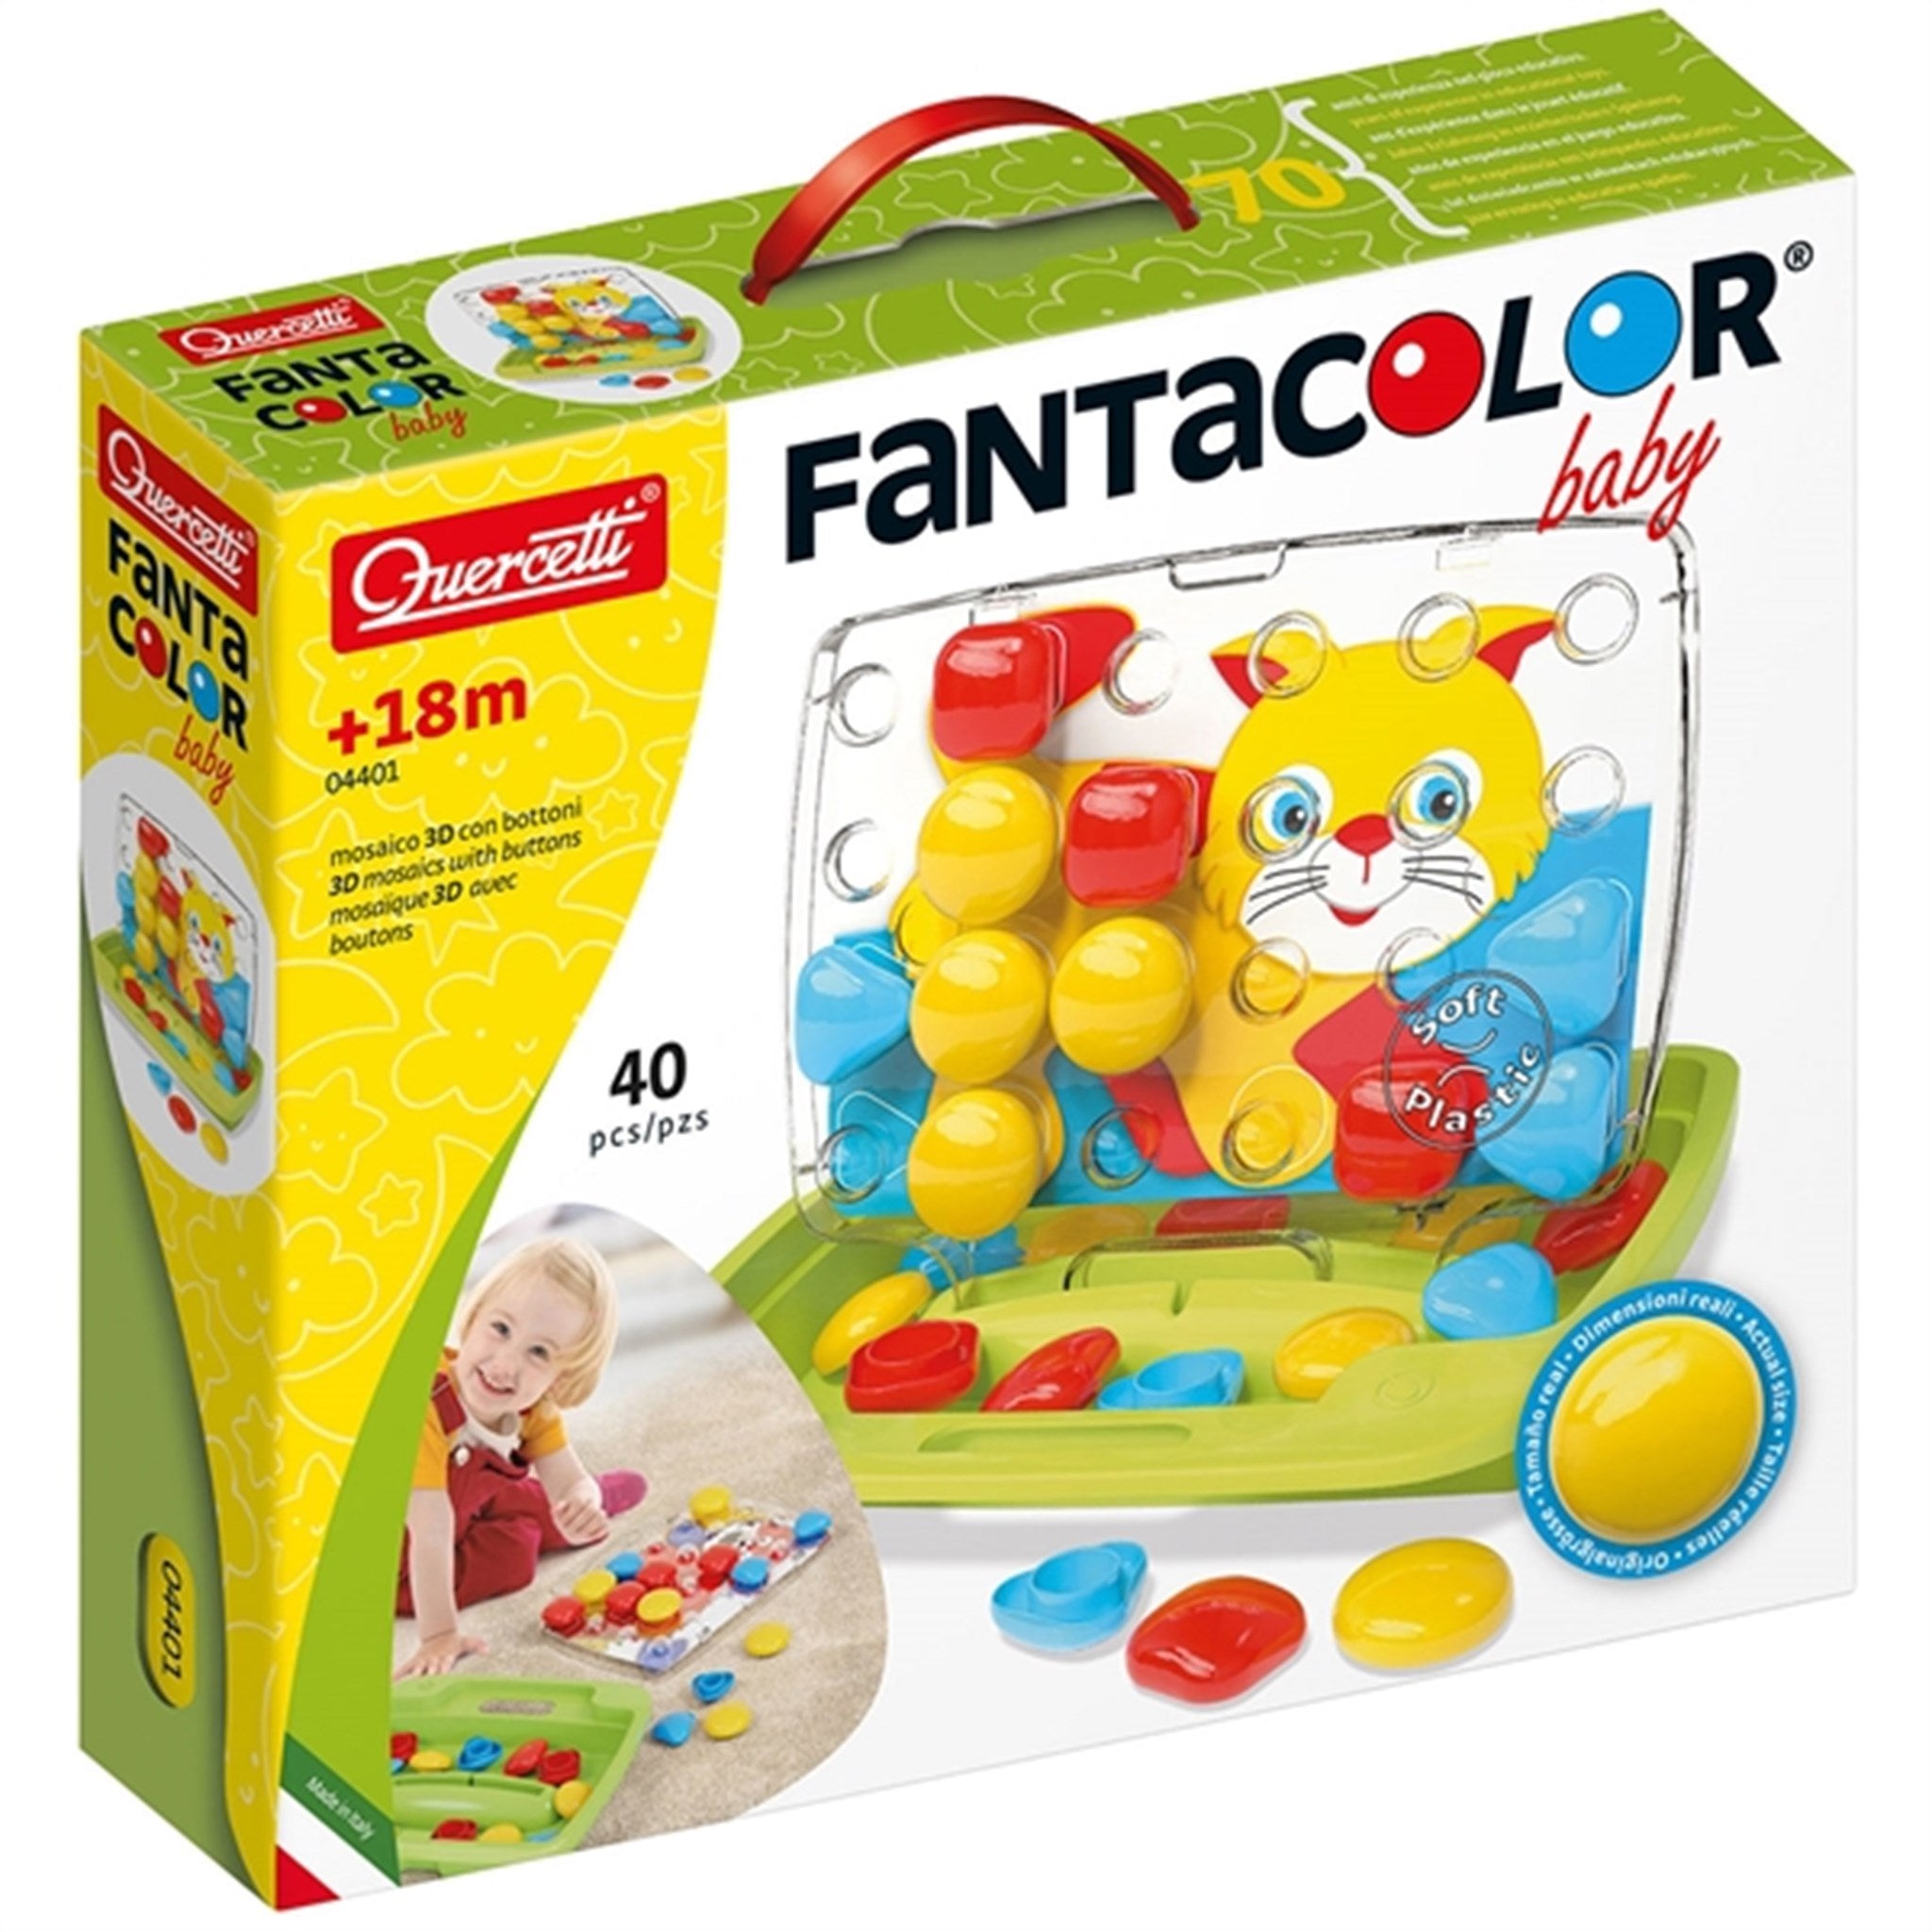 Quercetti FantaColor Baby (40 pieces) 4